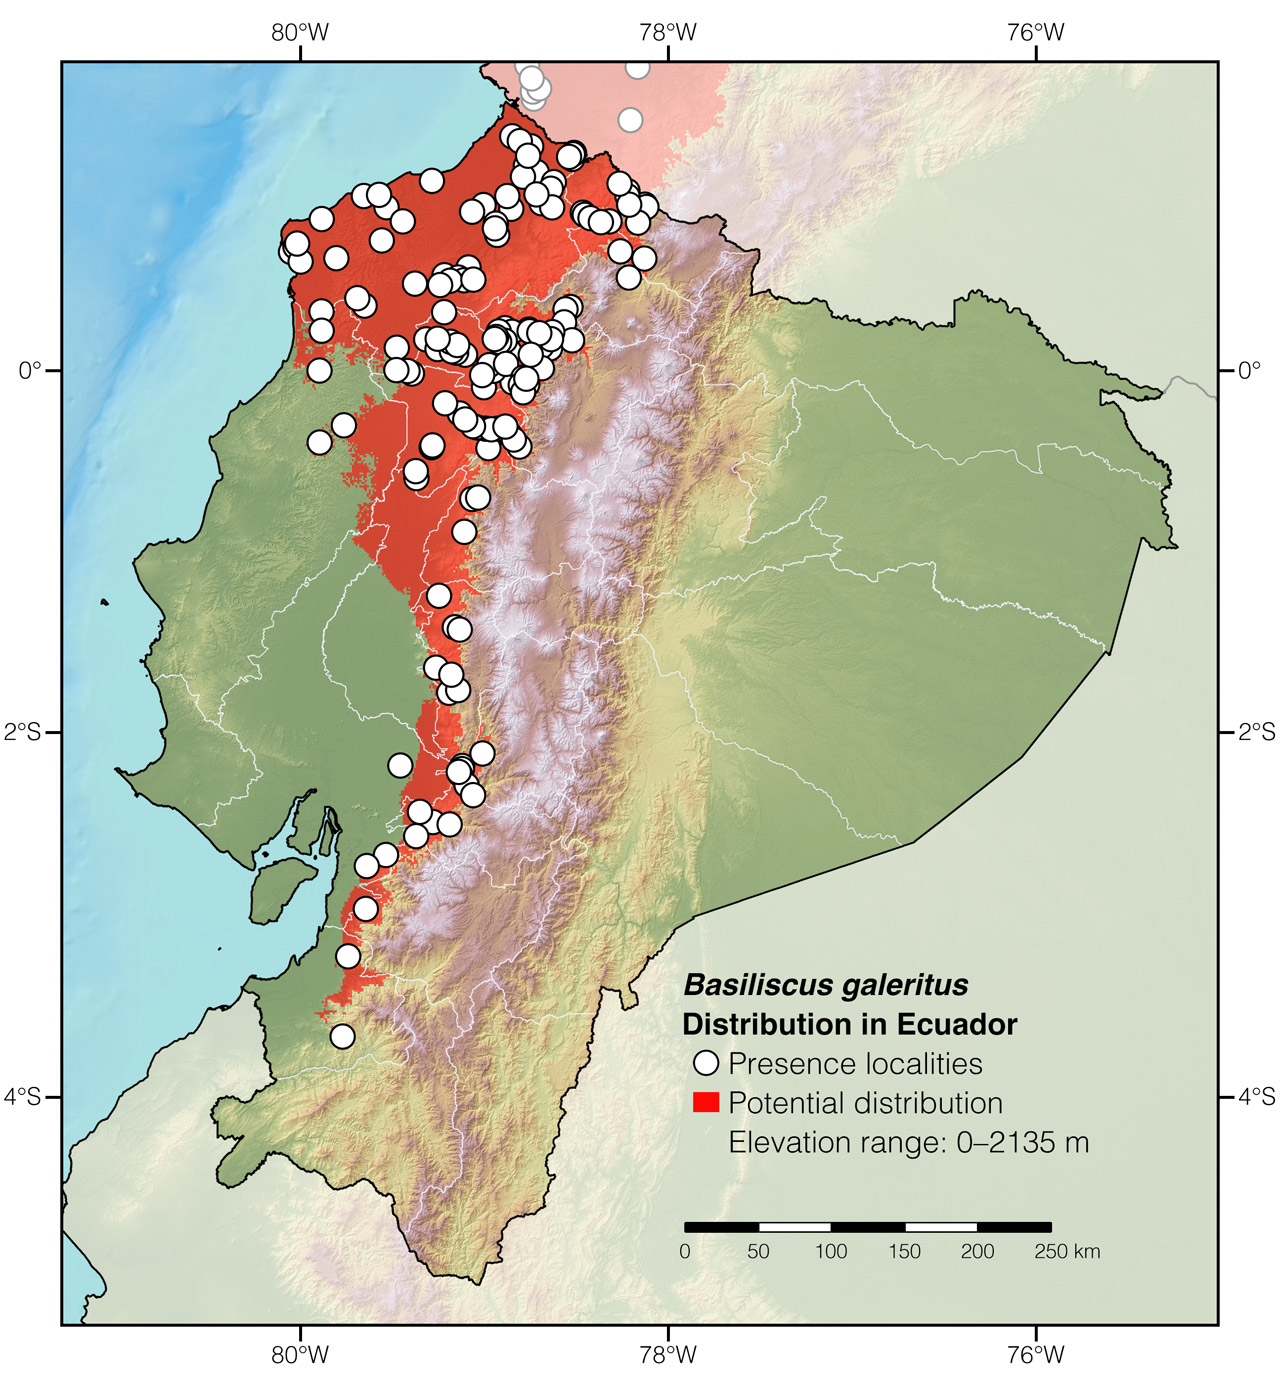 Distribution of Basiliscus galeritus in Ecuador